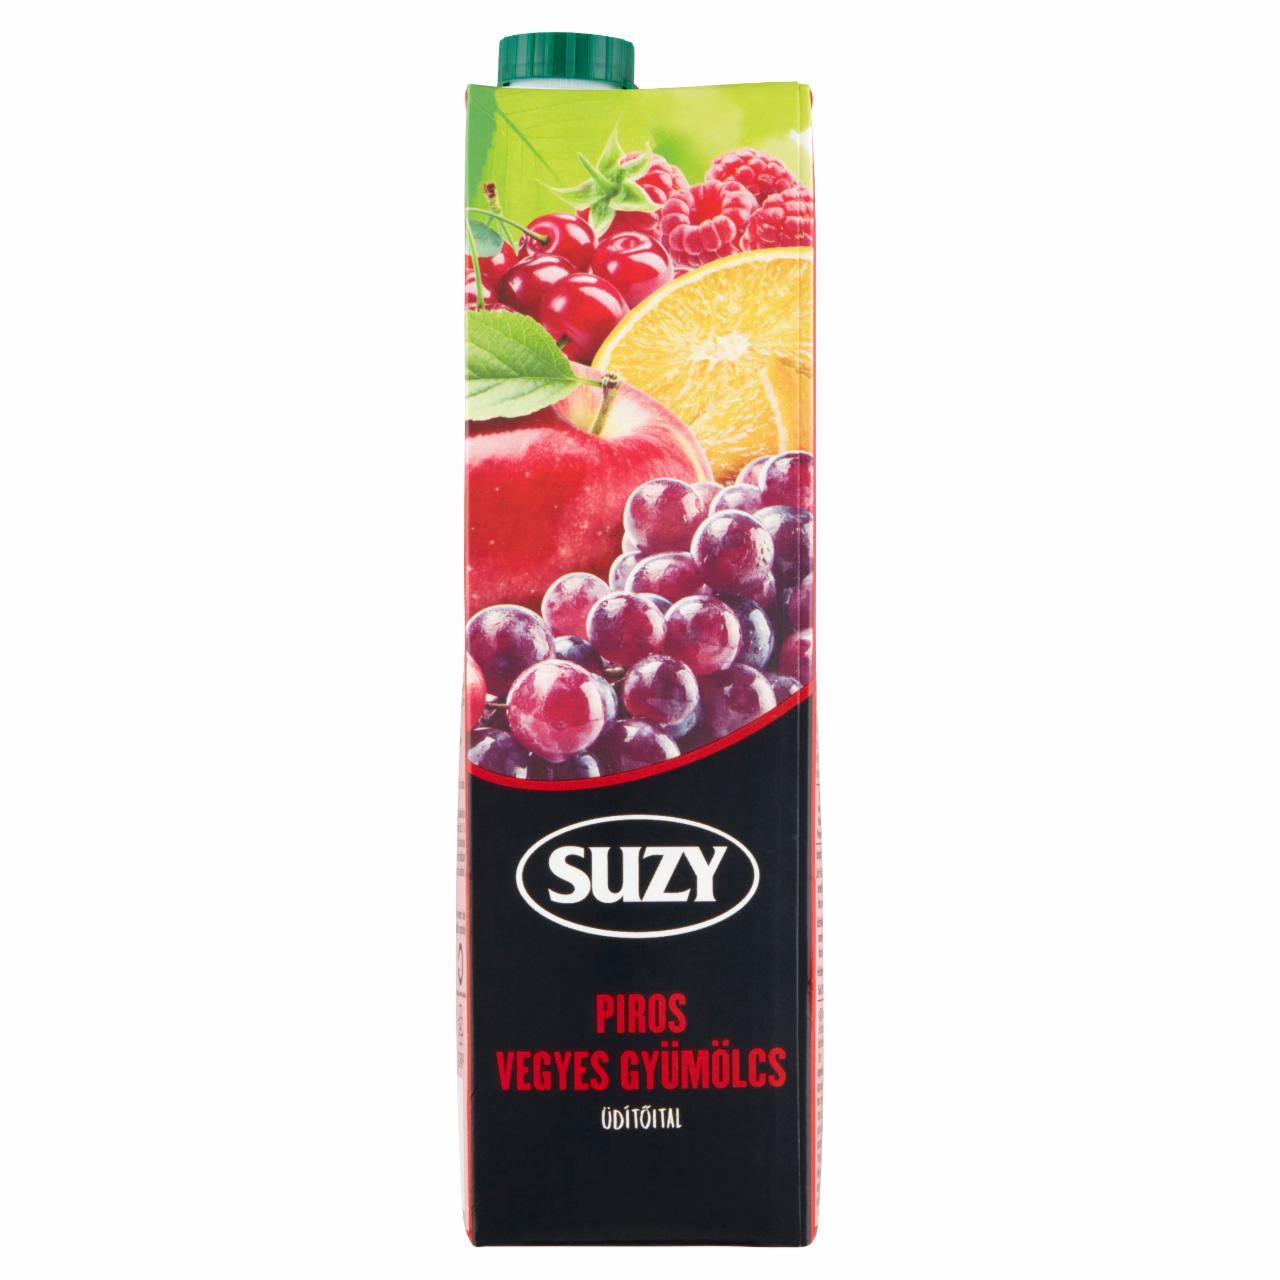 Képek - Suzy piros vegyes gyümölcs üdítőital édesítőszerekkel 1 l